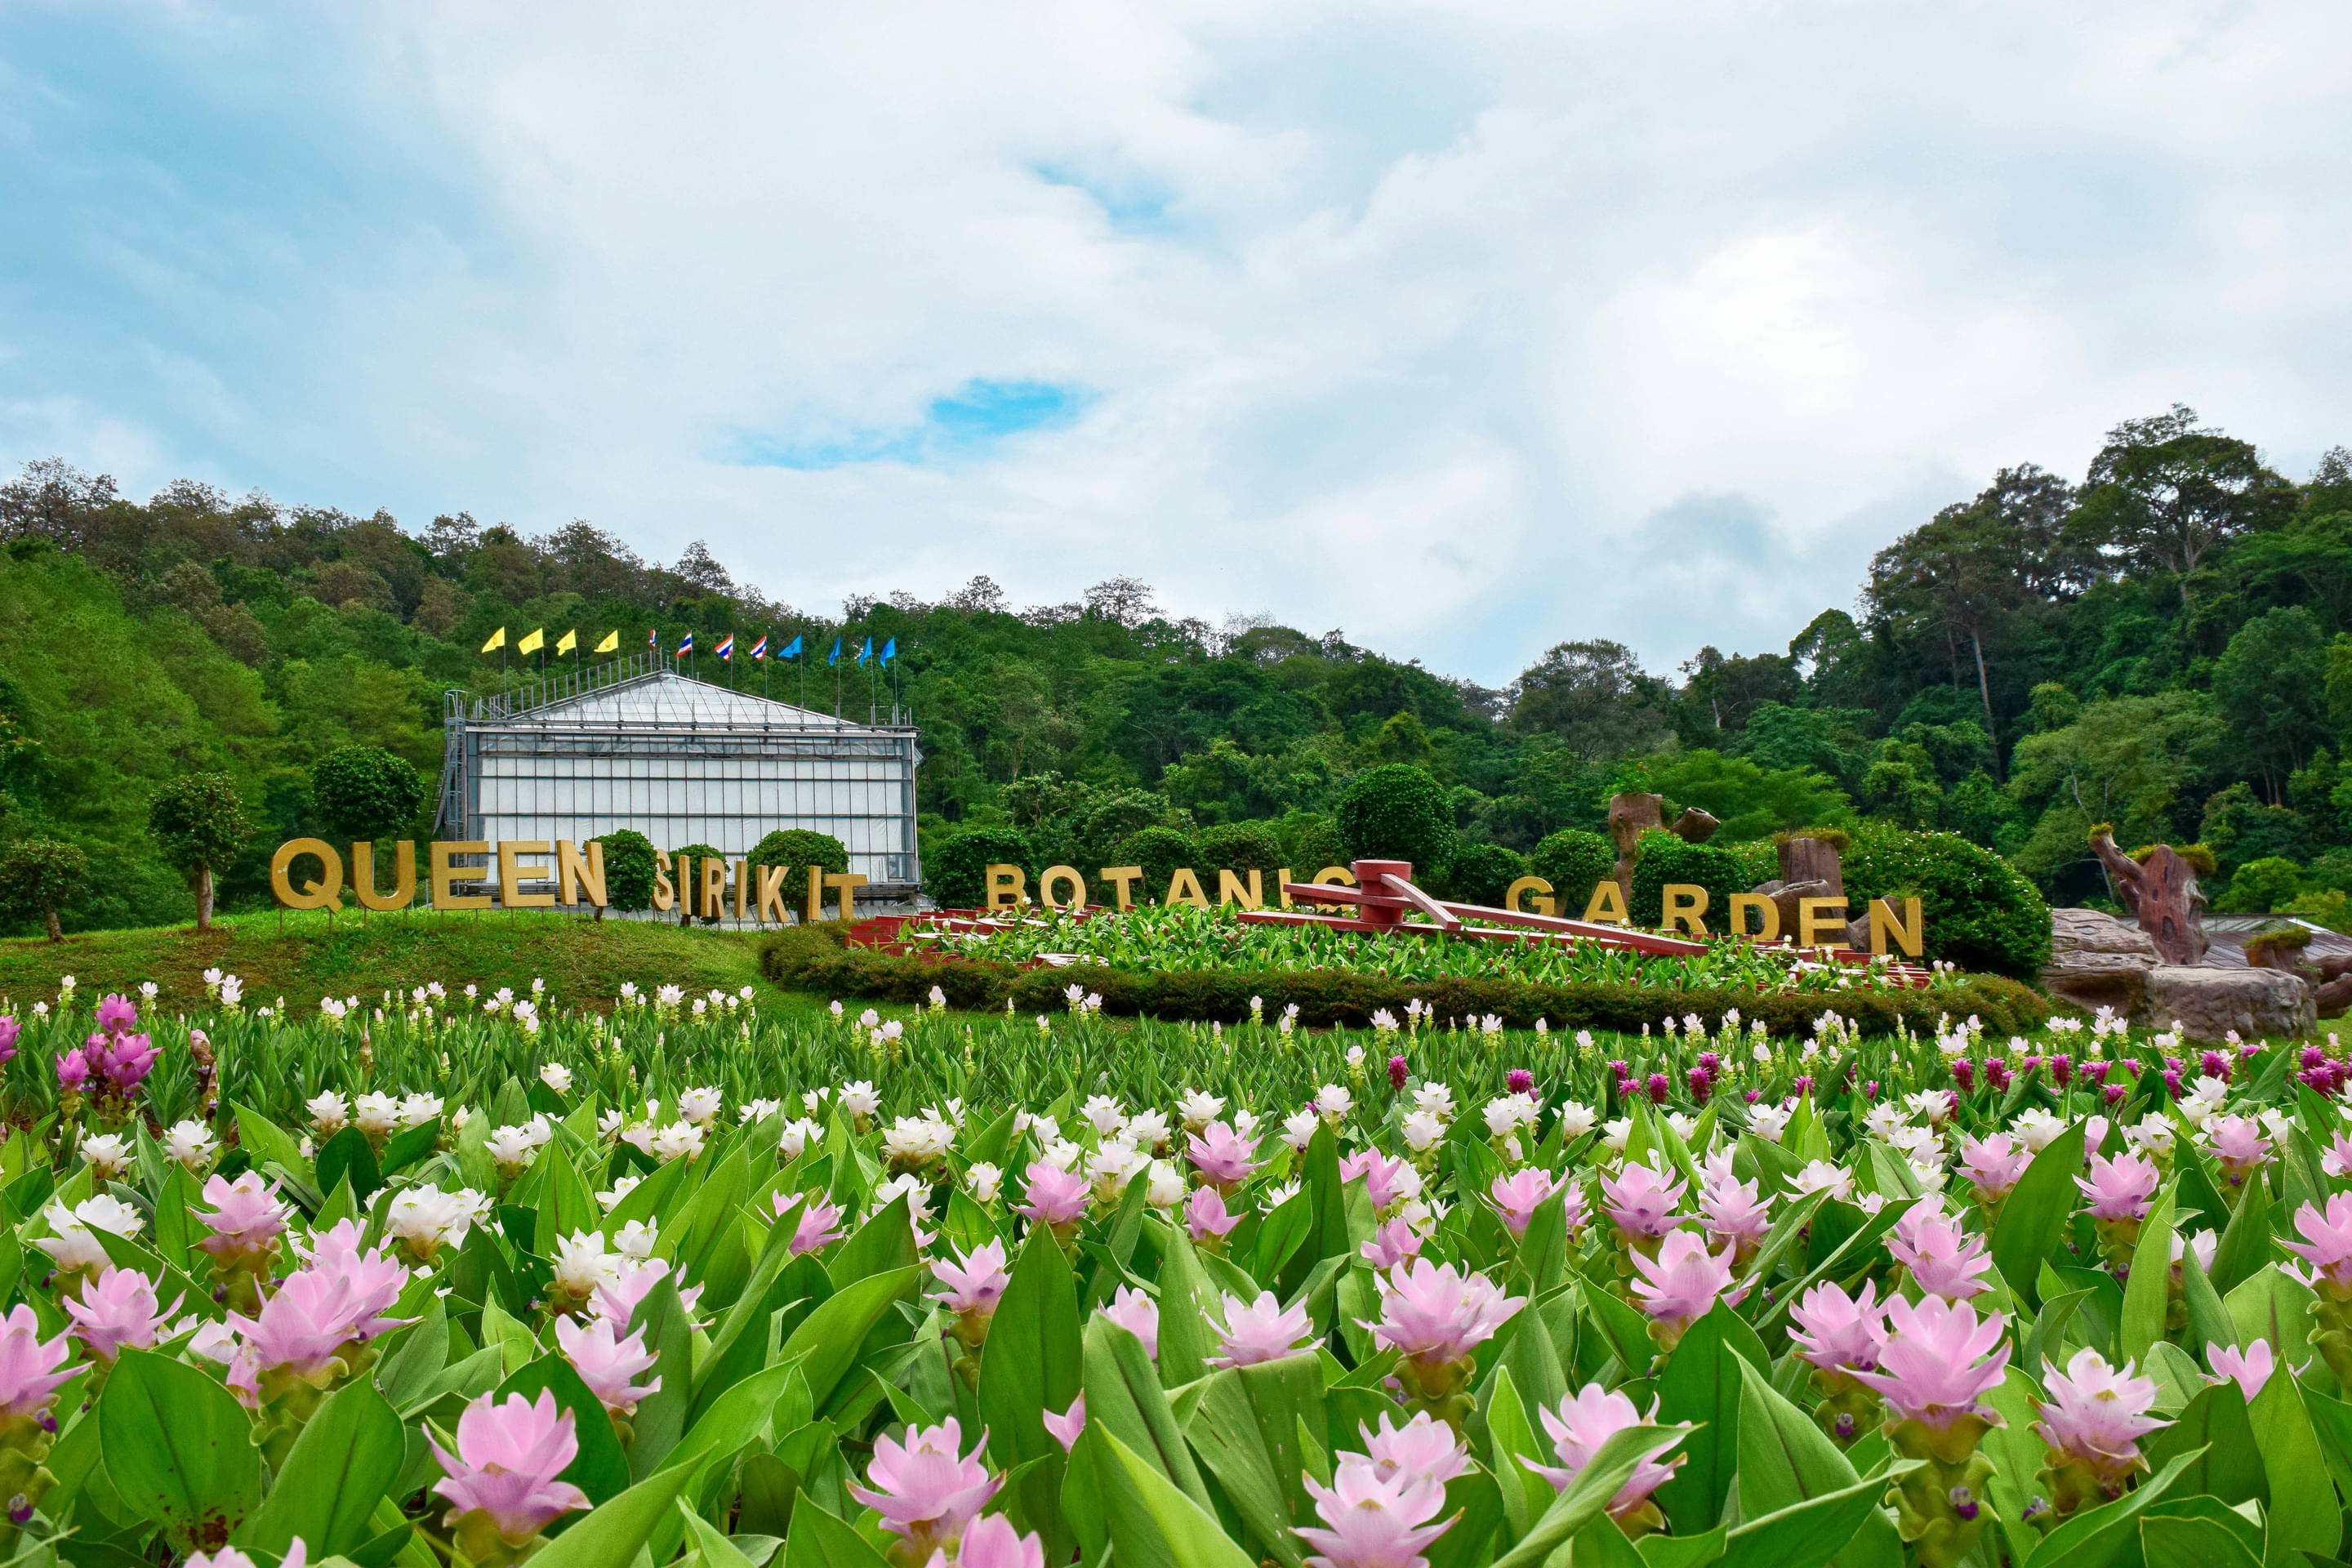 Queen Sirikit Botanic Garden Overview